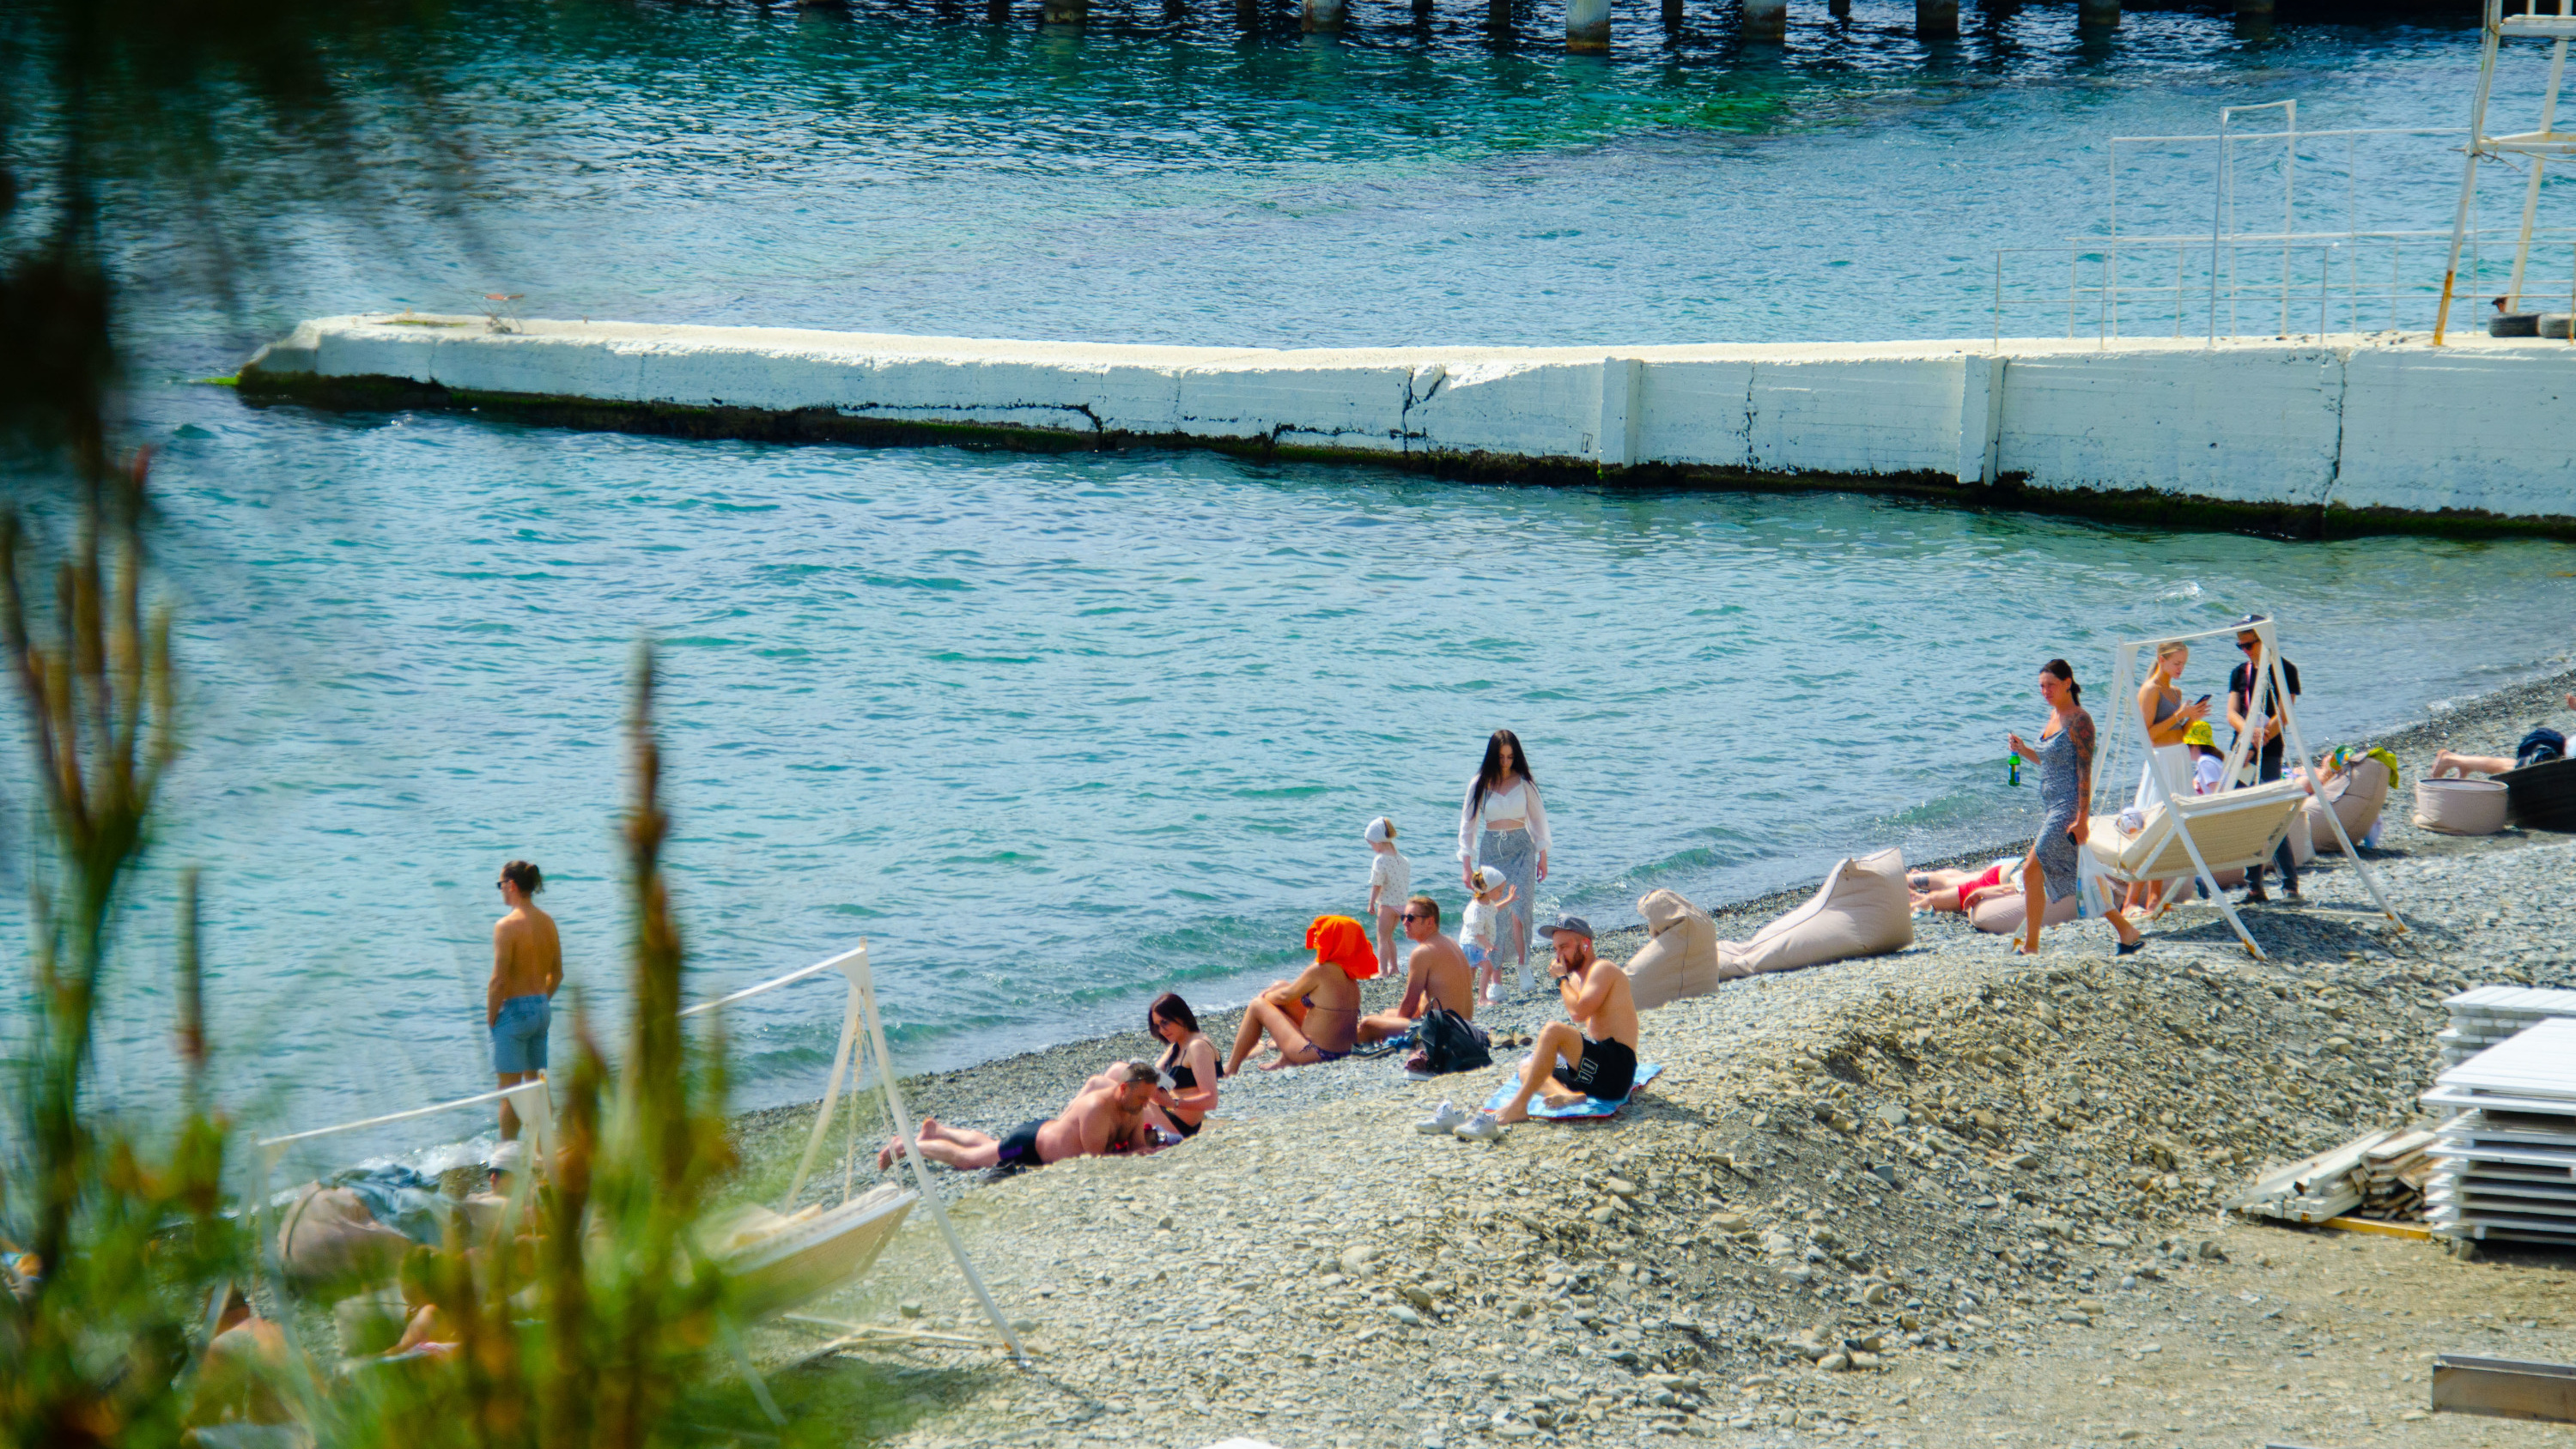 А у нас тут лето в апреле: фоторепортаж с пляжей Сочи, где уже открывают купальный сезон